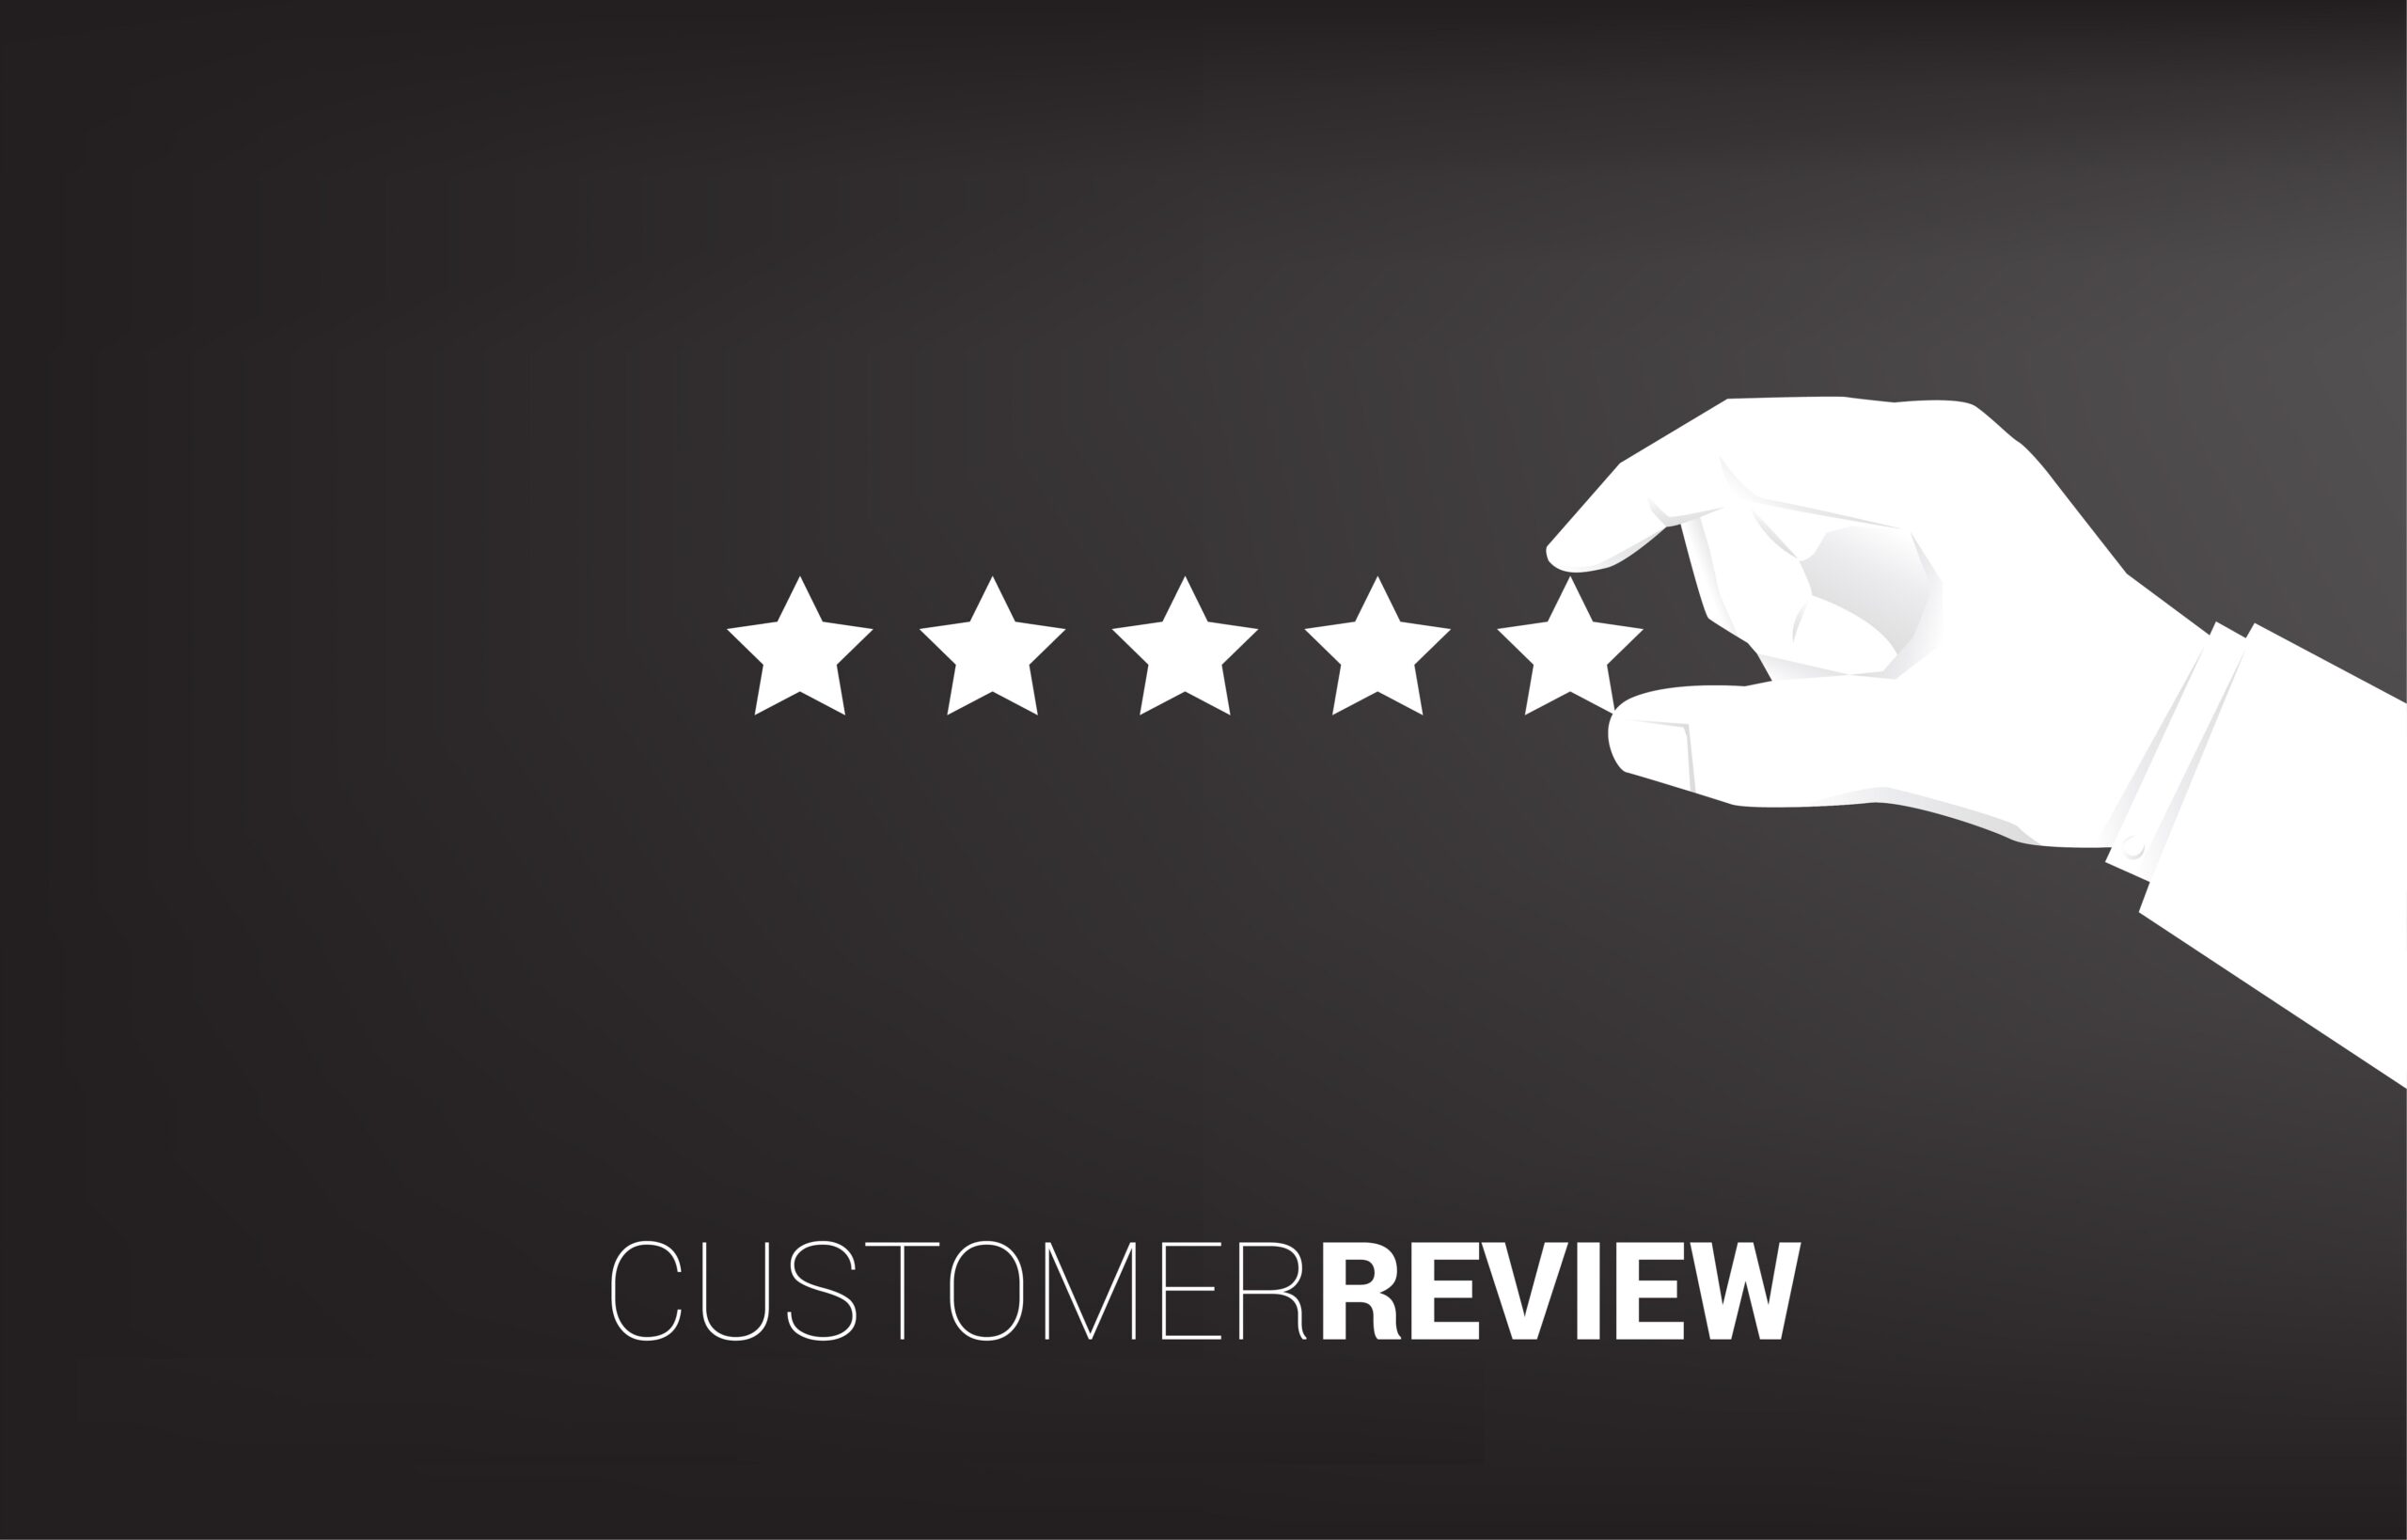 How do you get positive Customer reviews?